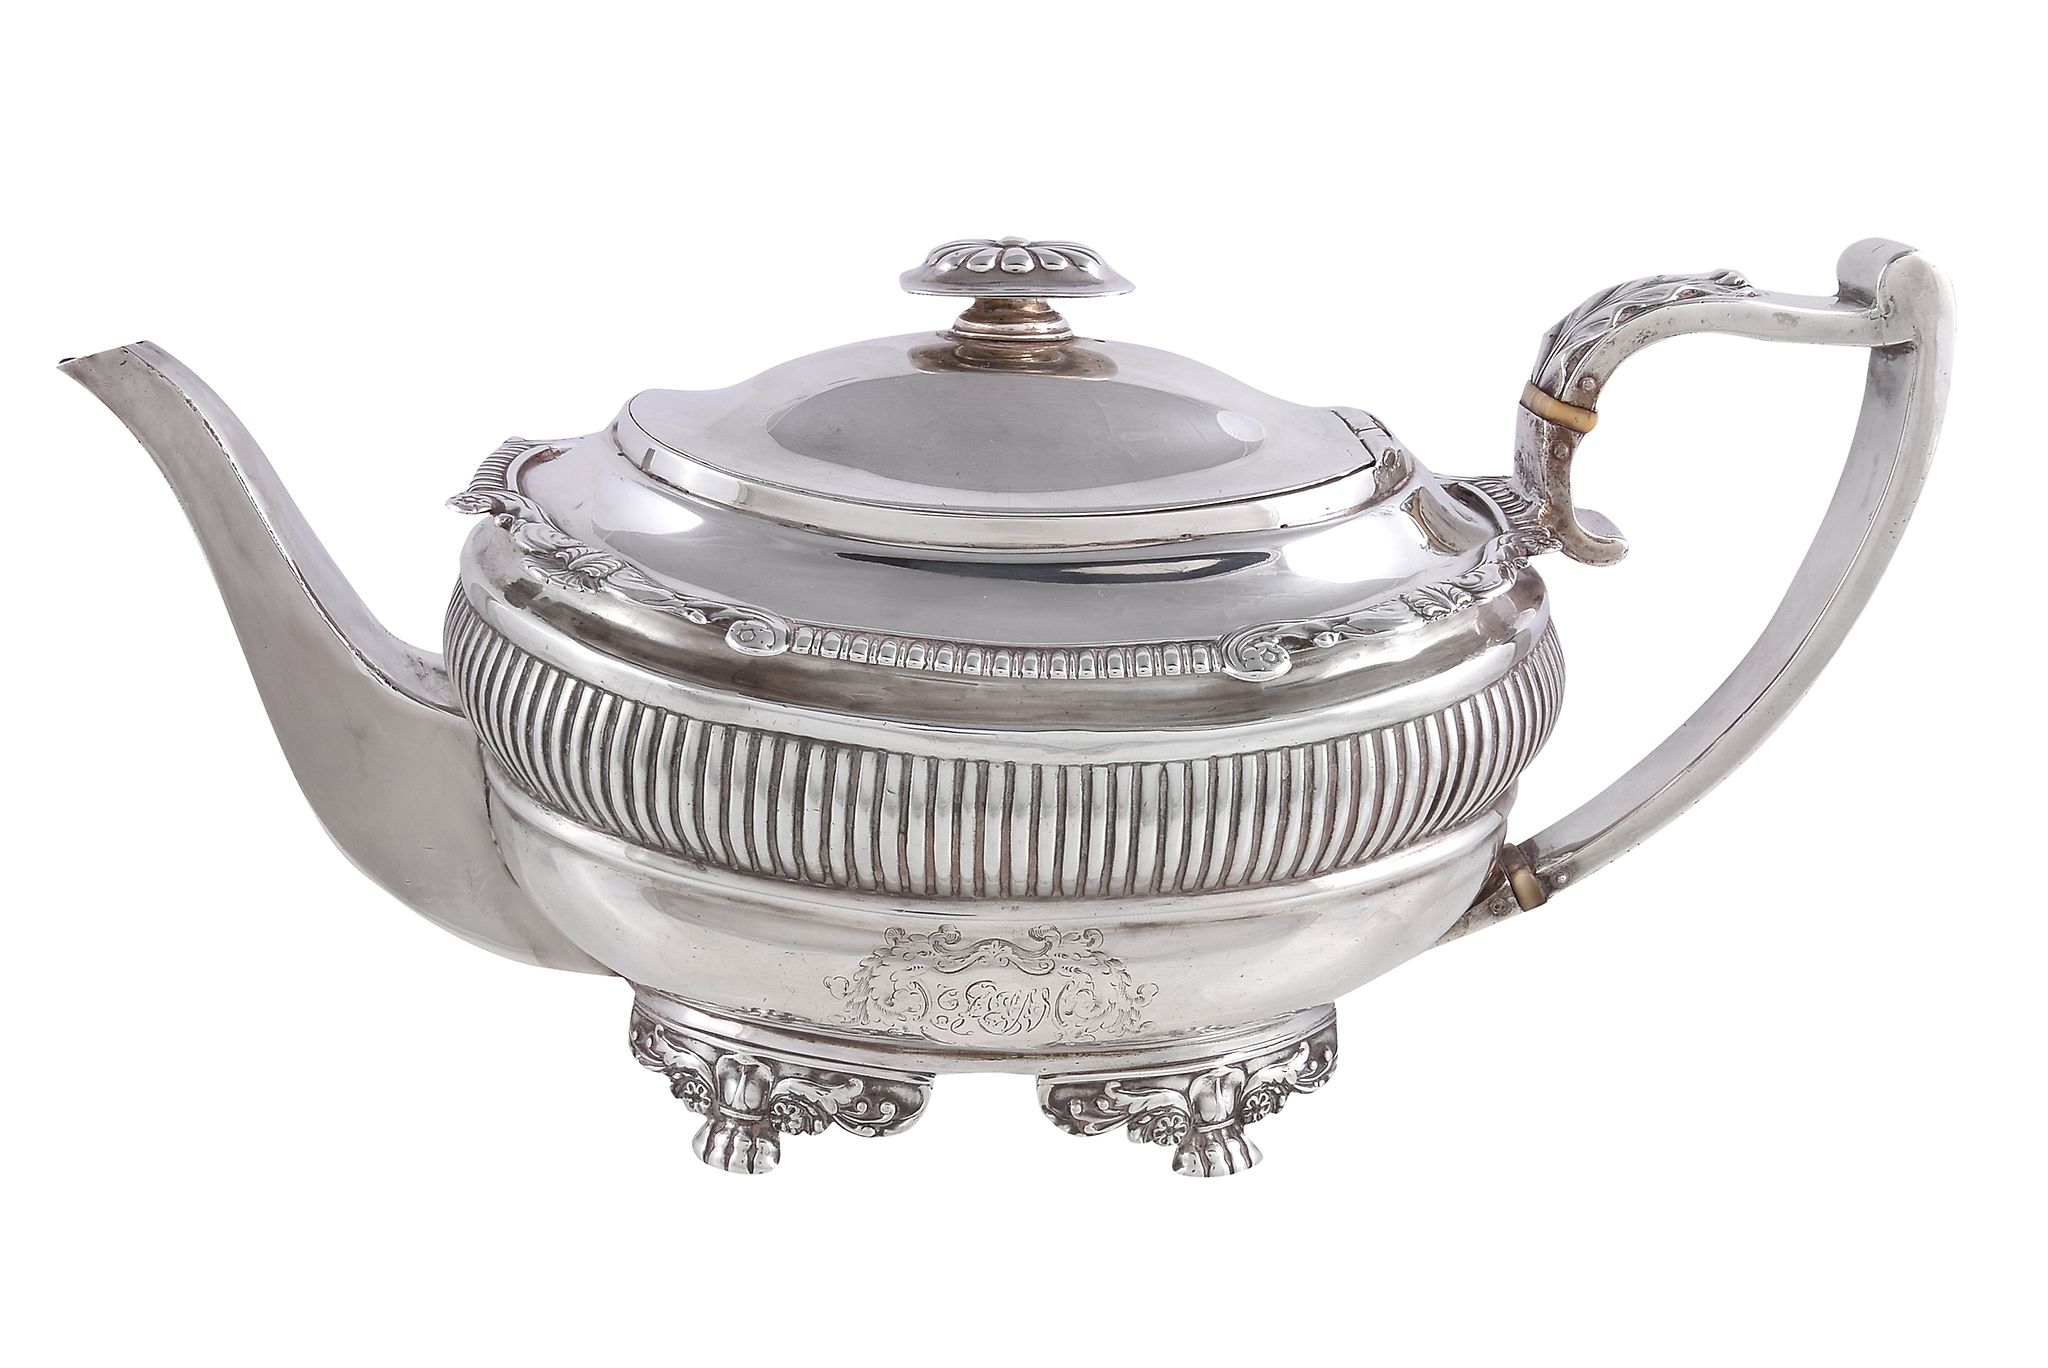 Ω A George III silver oblong baluster tea pot by Samuel Hennell, London 1818, with an oblong finial